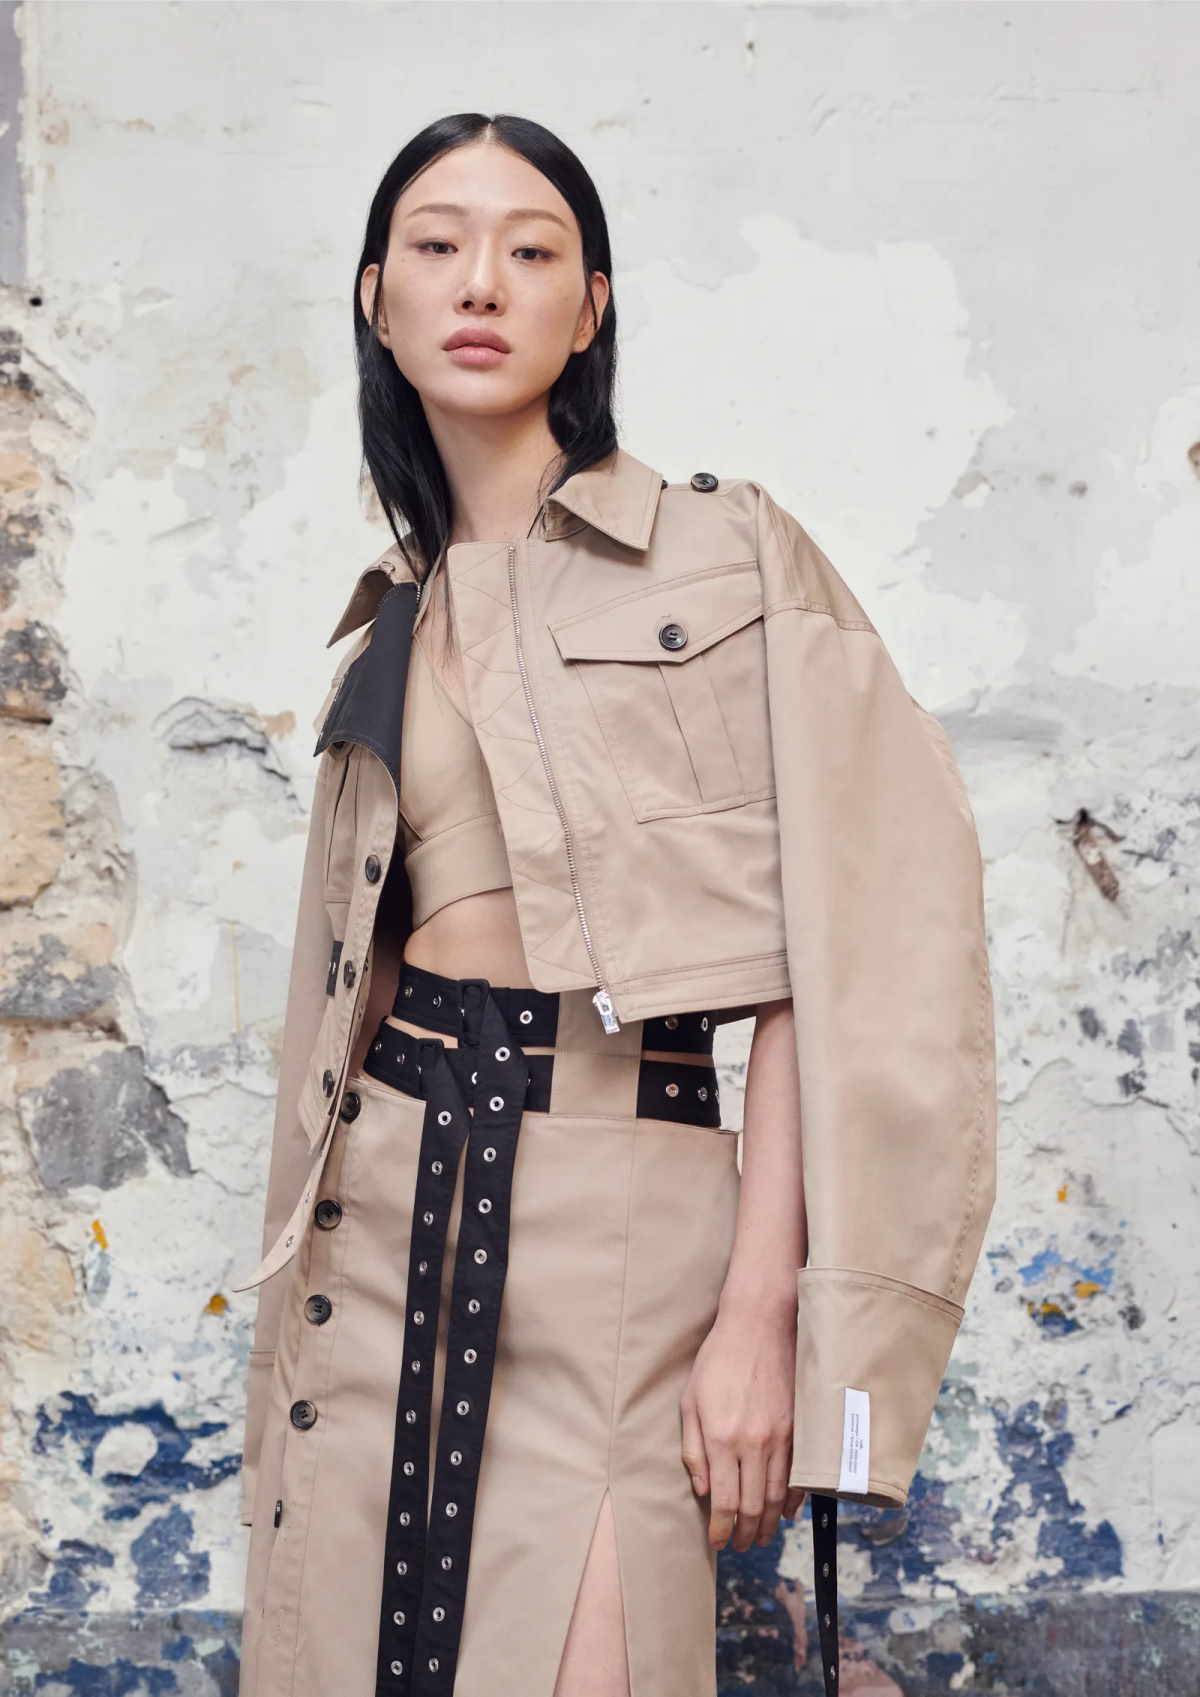 Wspólna kolekcja koreańskiej marki Rokh i H&M. Kolekcja H&M x Rokh przypomina wywrotowy styl projektów Roka Hwanga. A jednocześnie to ubrania idealne do codziennego noszenia.